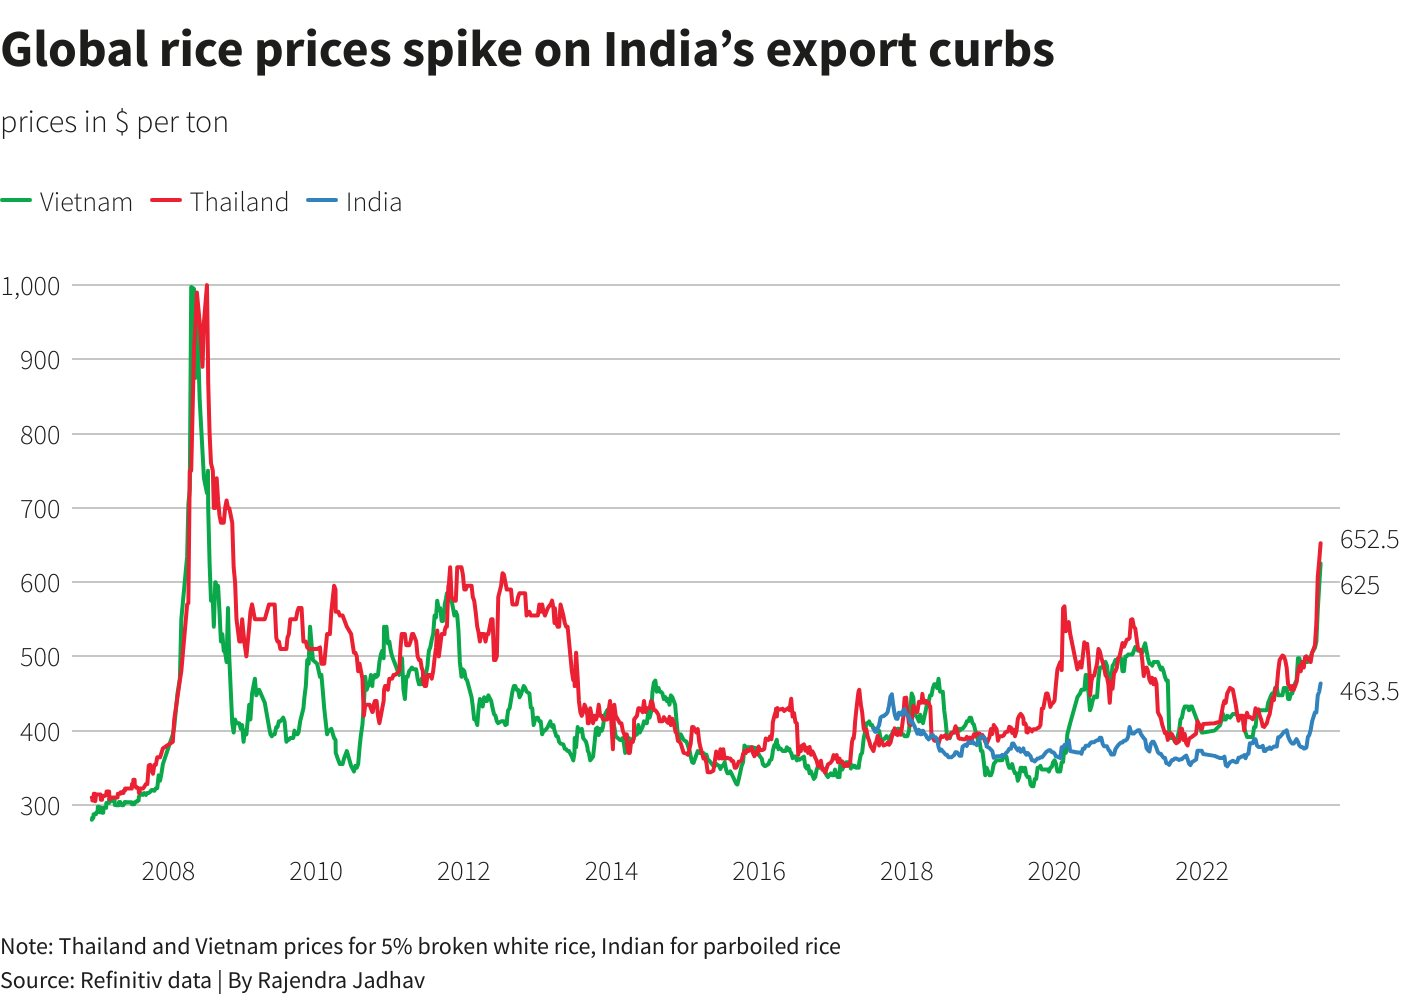 Ấn Độ cấm xuất khẩu gạo, Việt Nam, Thái Lan trước áp lực tăng xuất khẩu - ký ức 'hiệu ứng domino' 15 năm trước ùa về khiến thế giới đứng ngồi không yên - Ảnh 3.